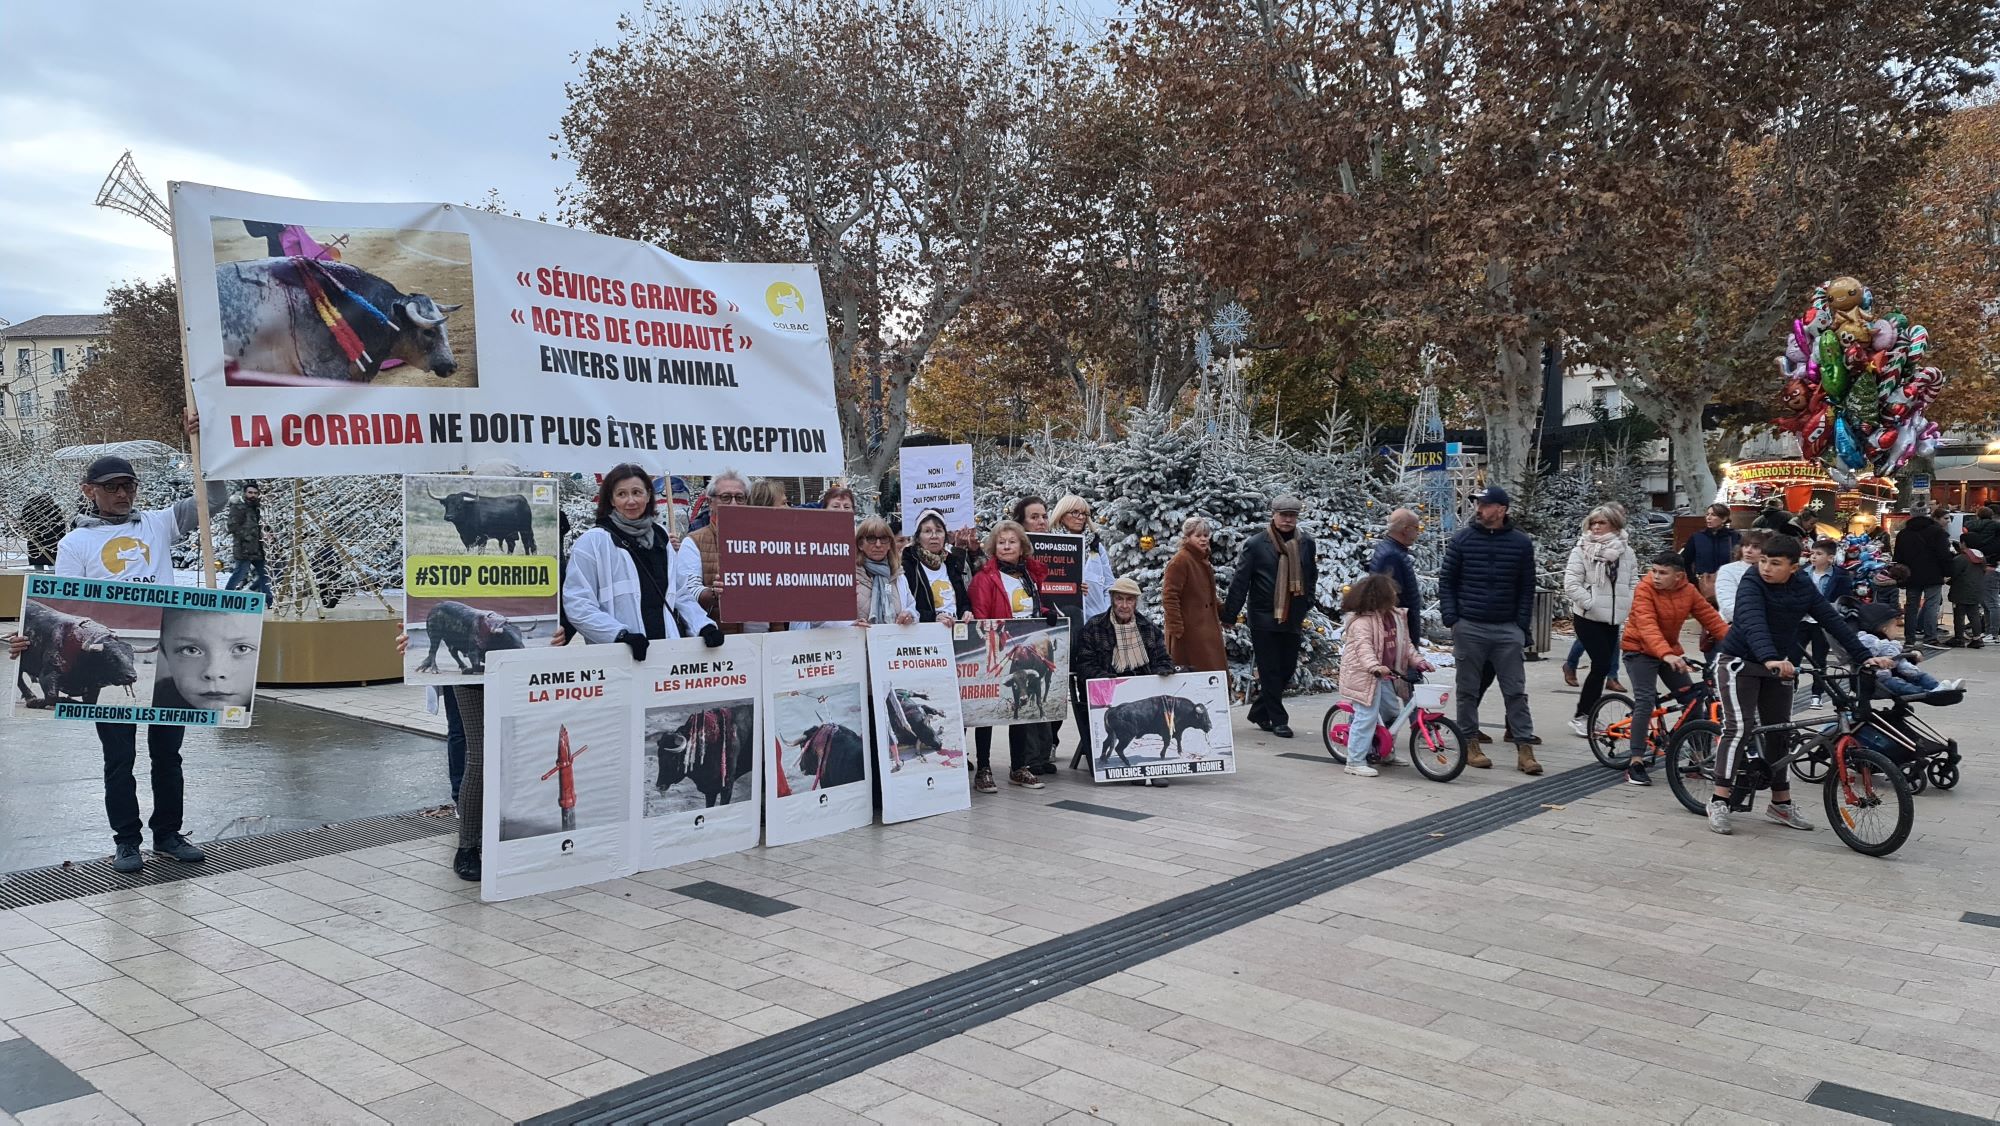 Béziers - Anticorrida : victoire en justice du COLBAC contre l'interdiction de manifester